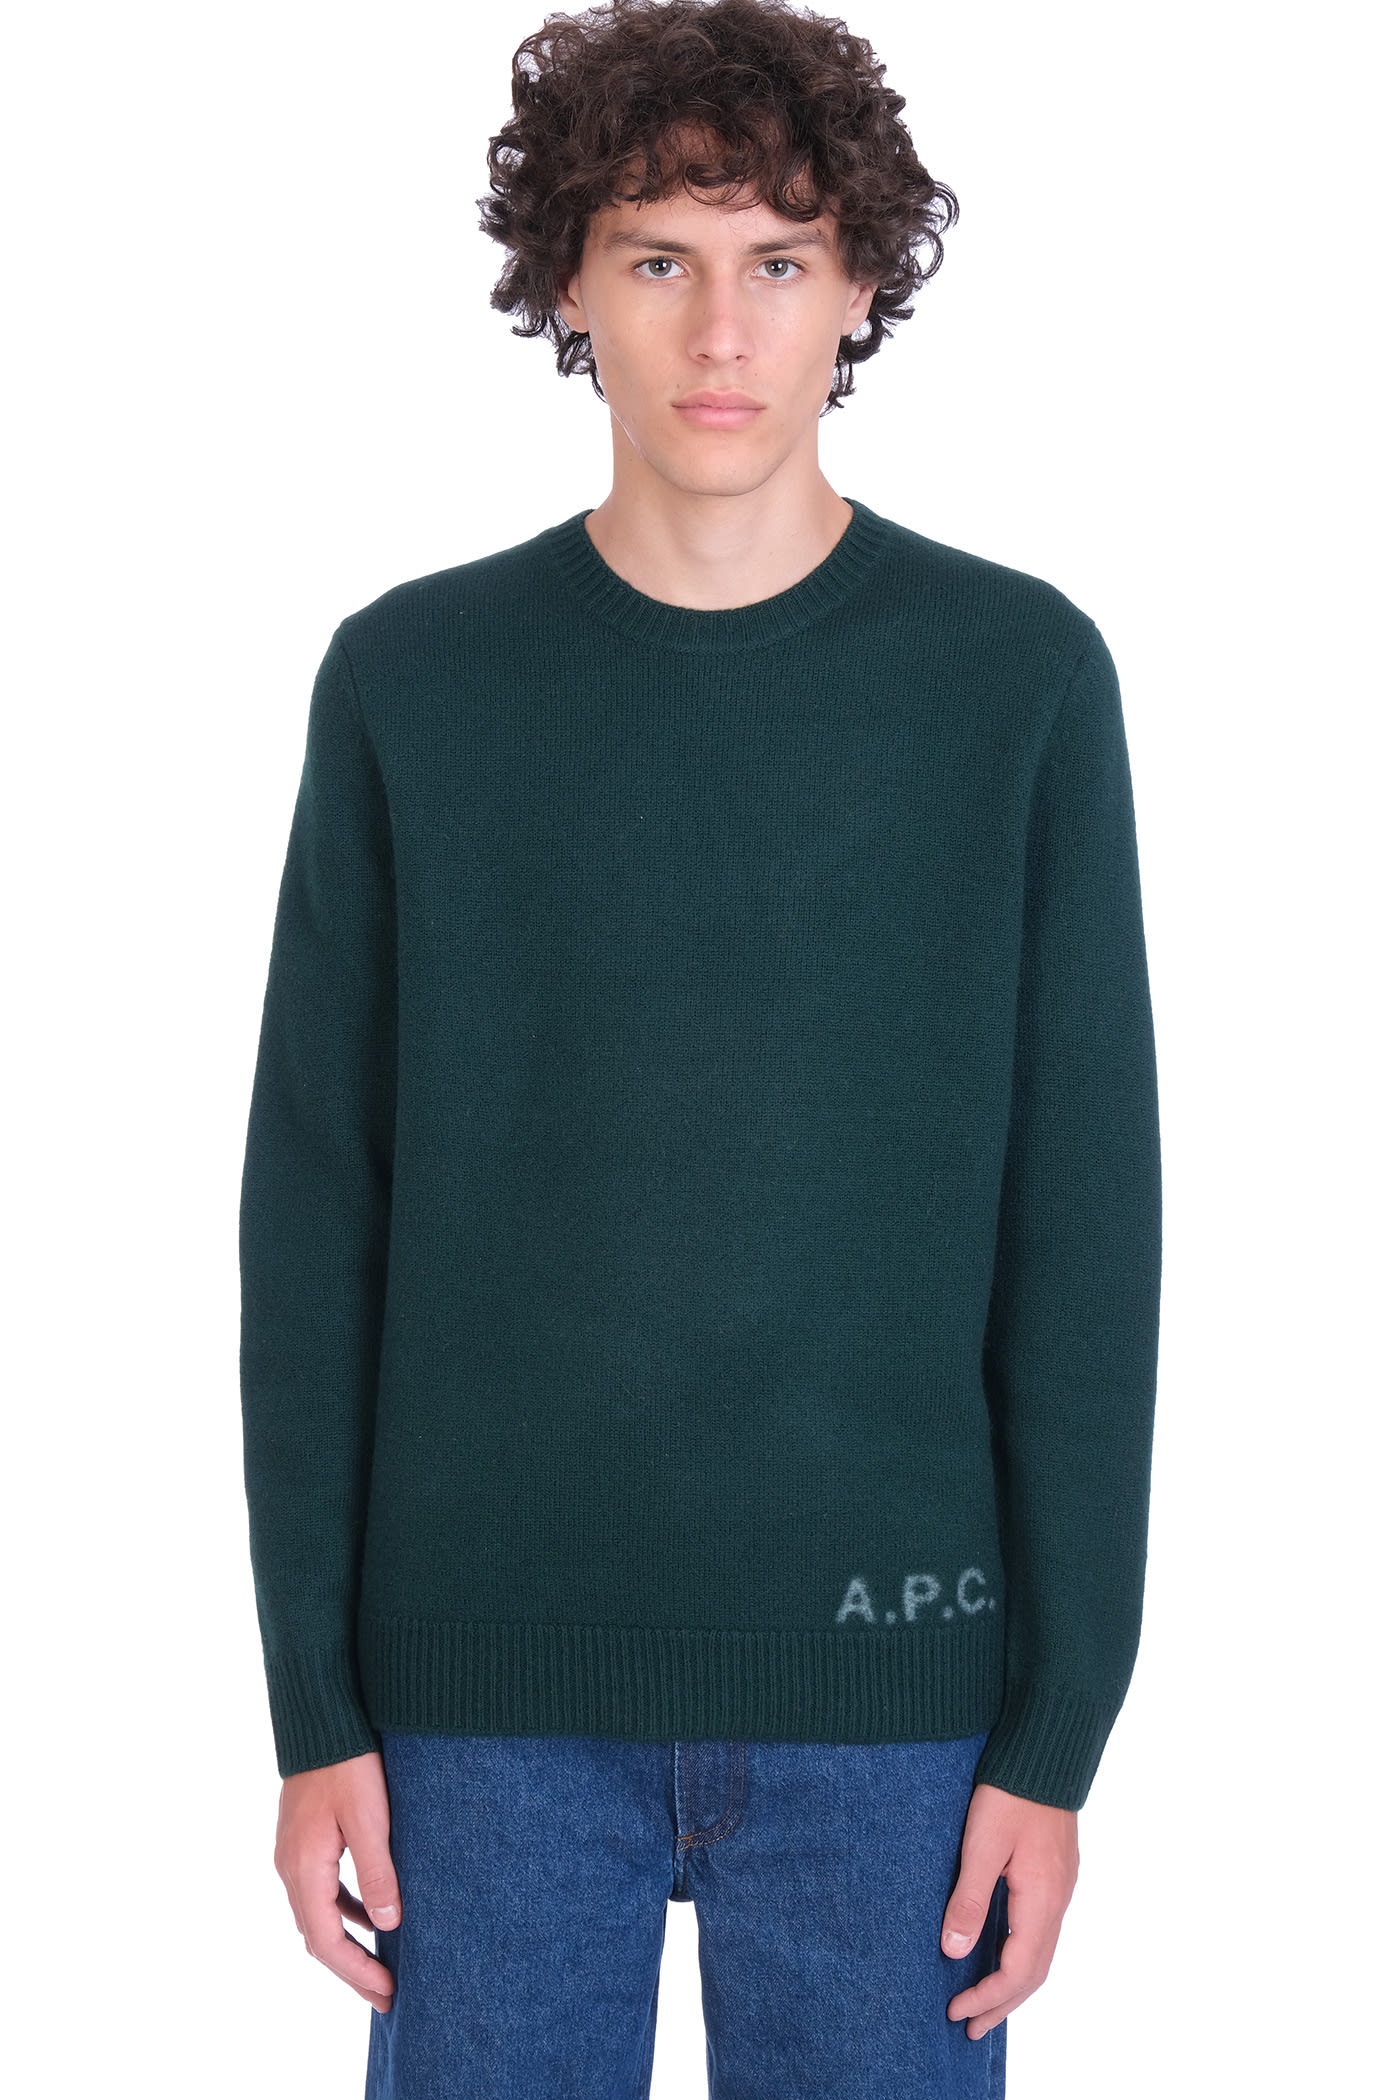 A.P.C. Edward Knitwear In Green Wool